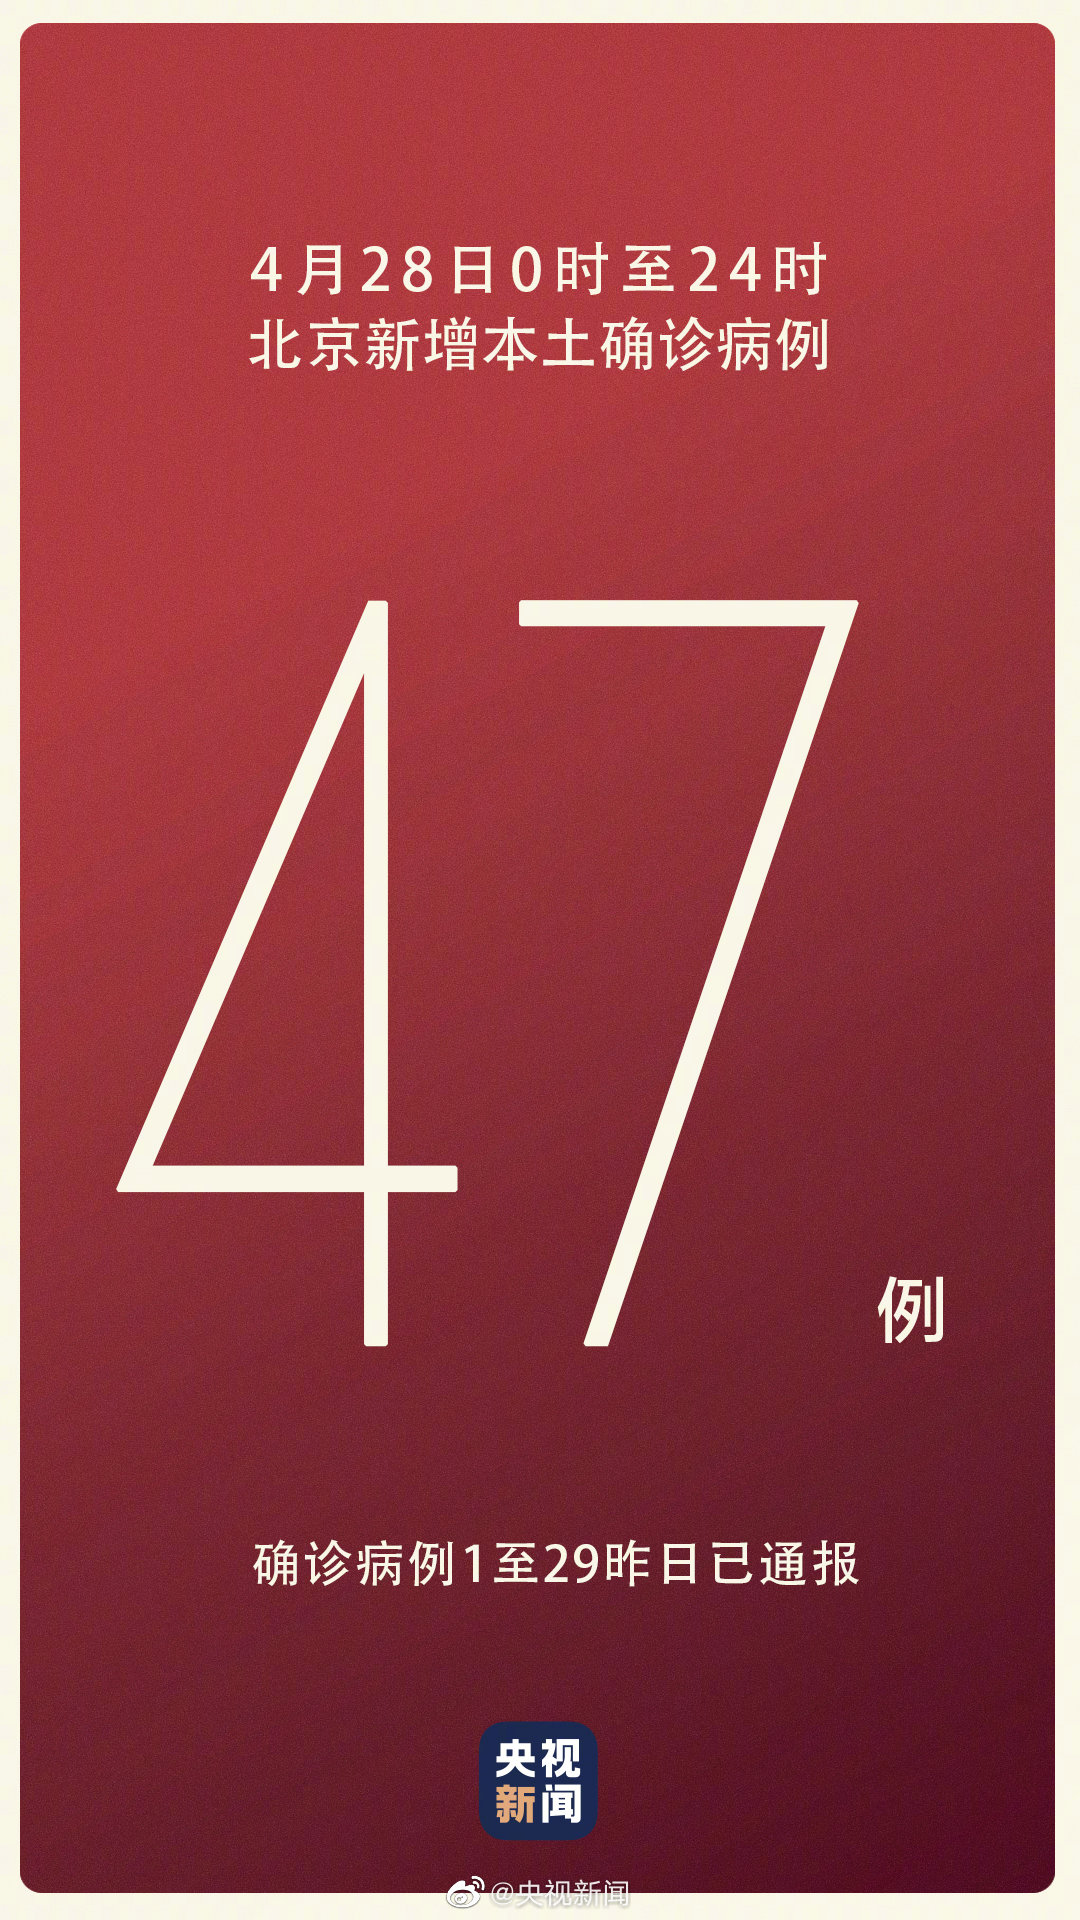 北京疫情最新消息|4月28日北京新增47例本土确诊和2例无症状感染者